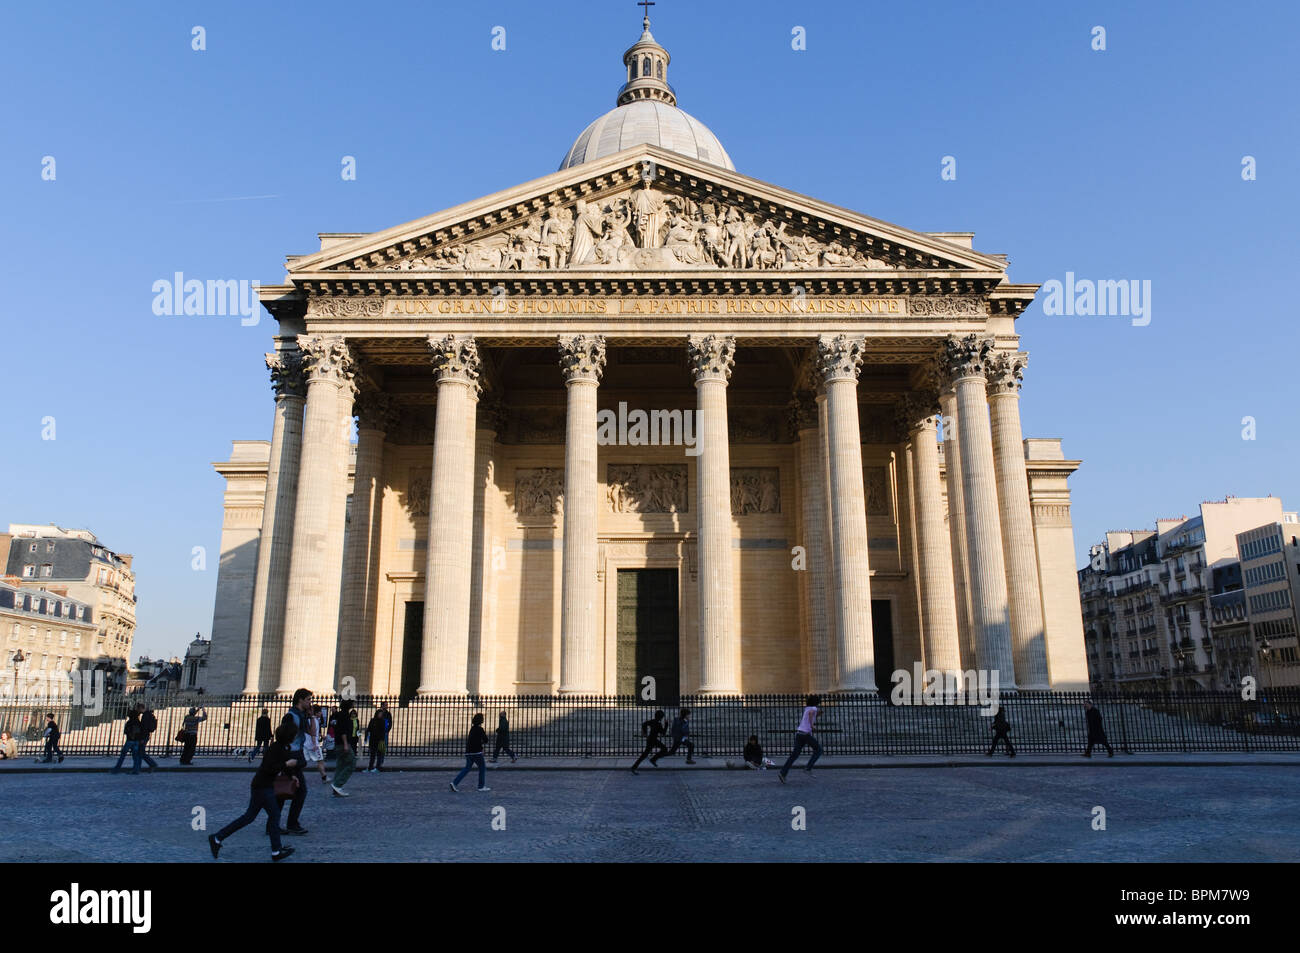 PARIS, Frankreich - Vorderseite des Pantheons in Paris. Es wurde ursprünglich als Kirche St. Geneviève erbaut und das Reliquiar châsse mit ihren Reliquien zu Haus, aber nach vielen Änderungen, jetzt als säkulare Mausoleum mit den sterblichen Überresten von Unterschieden die französischen Bürger. Es ist ein frühes Beispiel der neo-klassizistischen Stil, mit einer Fassade auf dem Pantheon in Rom nachempfunden. Stockfoto